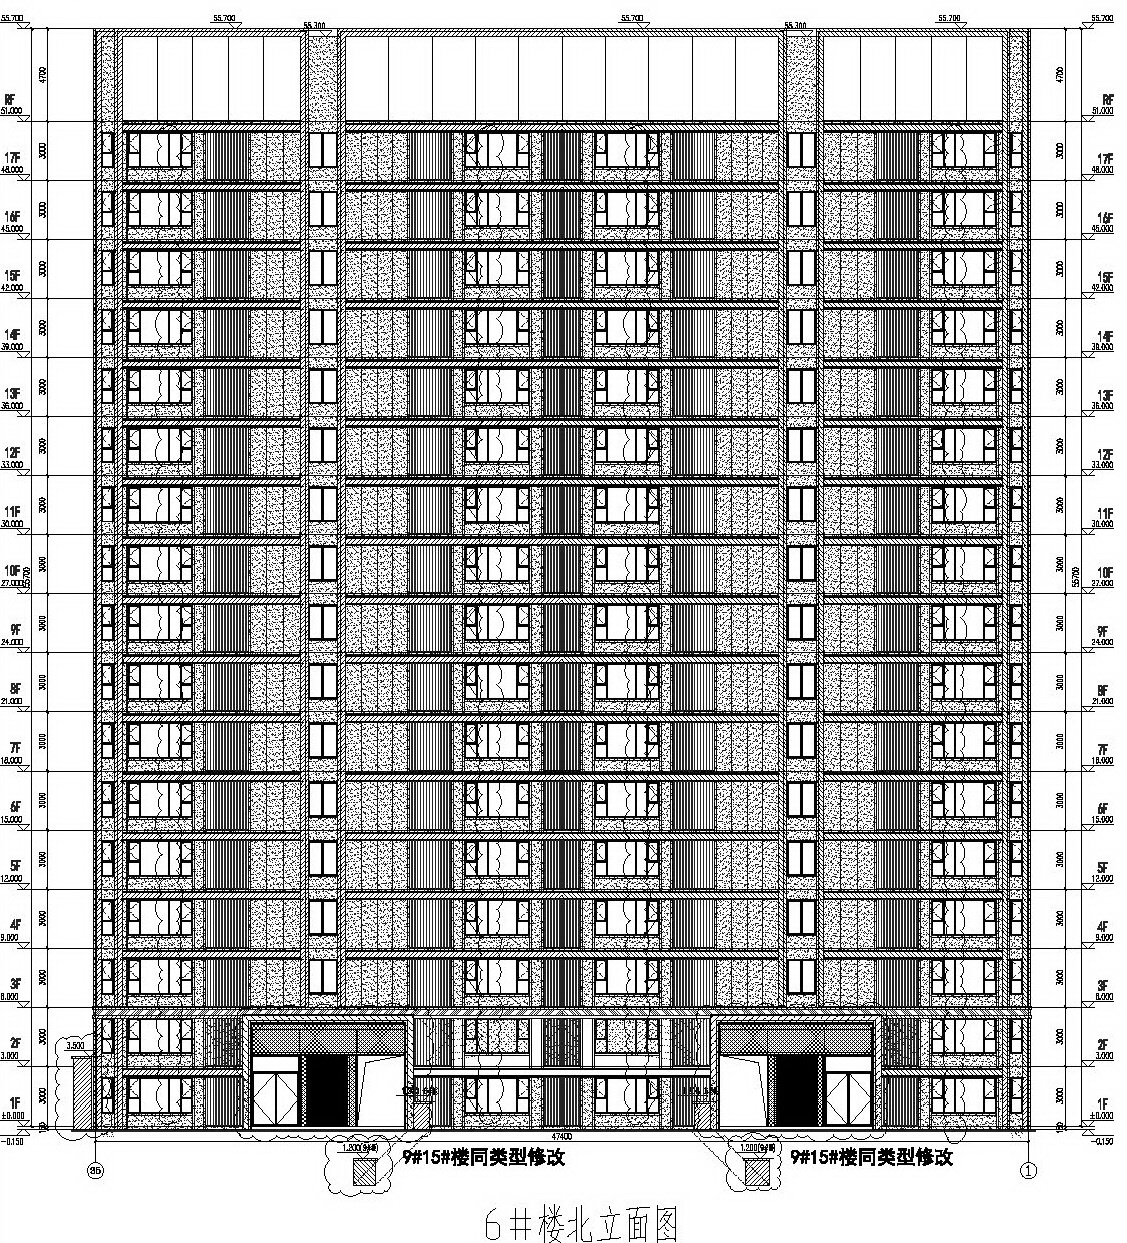 虹溪璟庭 #6幢住宅楼北侧立面设计图_2022年3月8日规划方案变更后